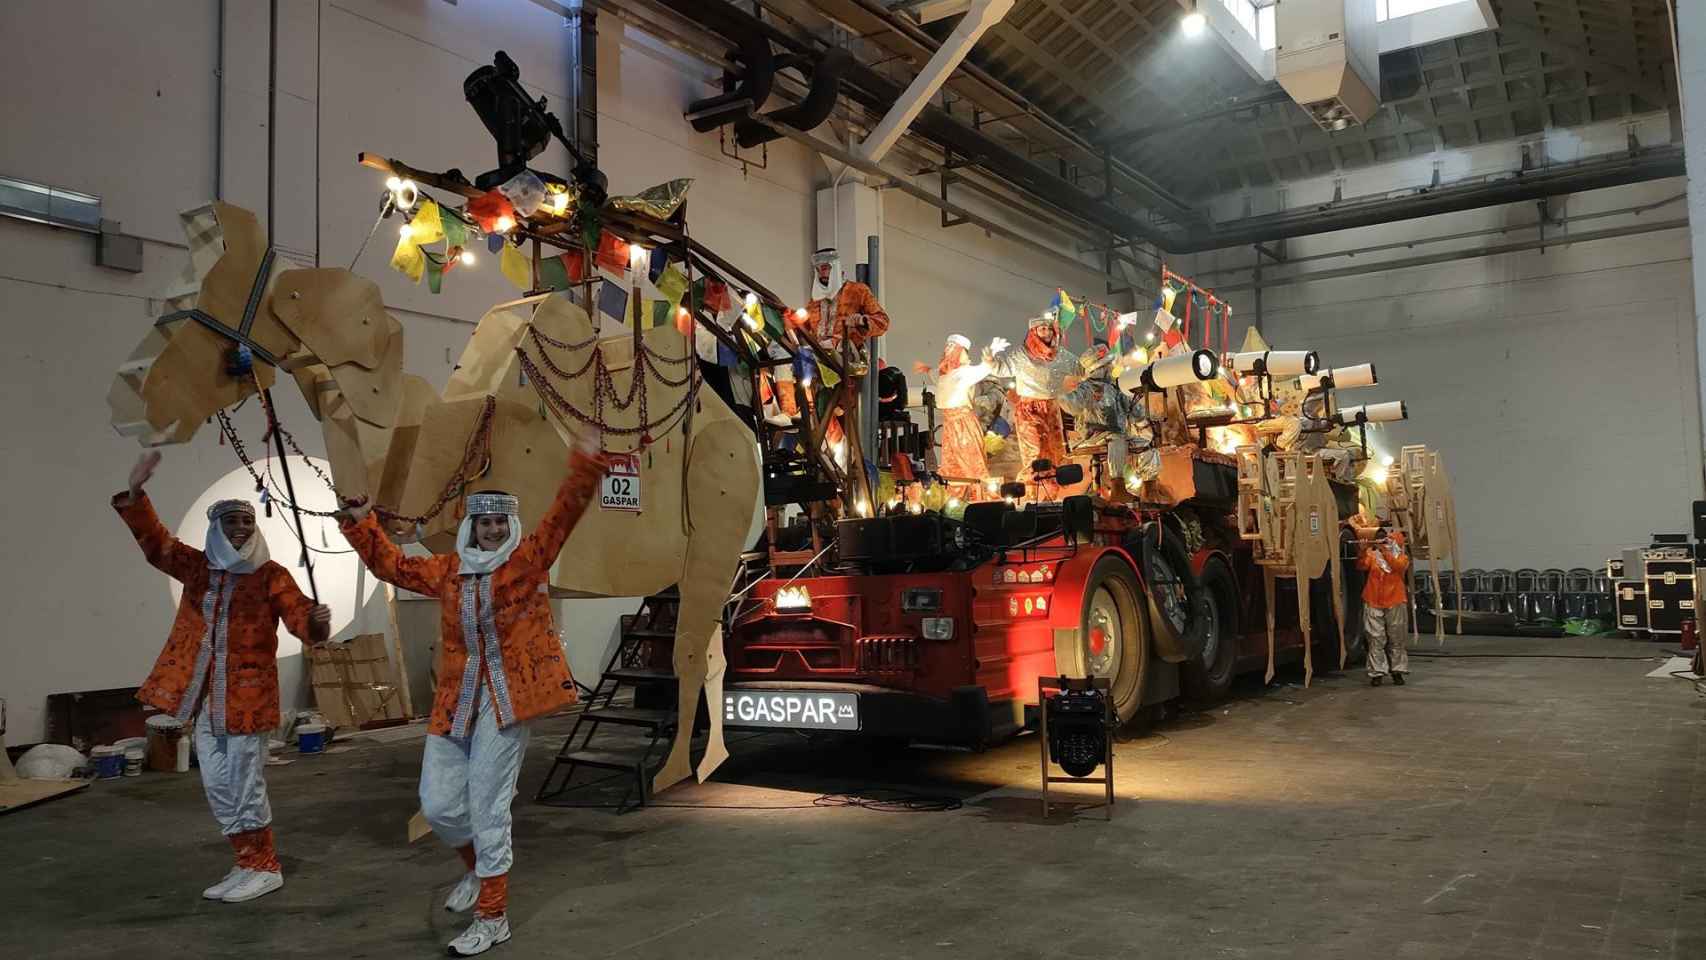 La Cabalgata de Reyes de Barcelona contará con dos nuevas carrozas, para Gaspar y Baltasar